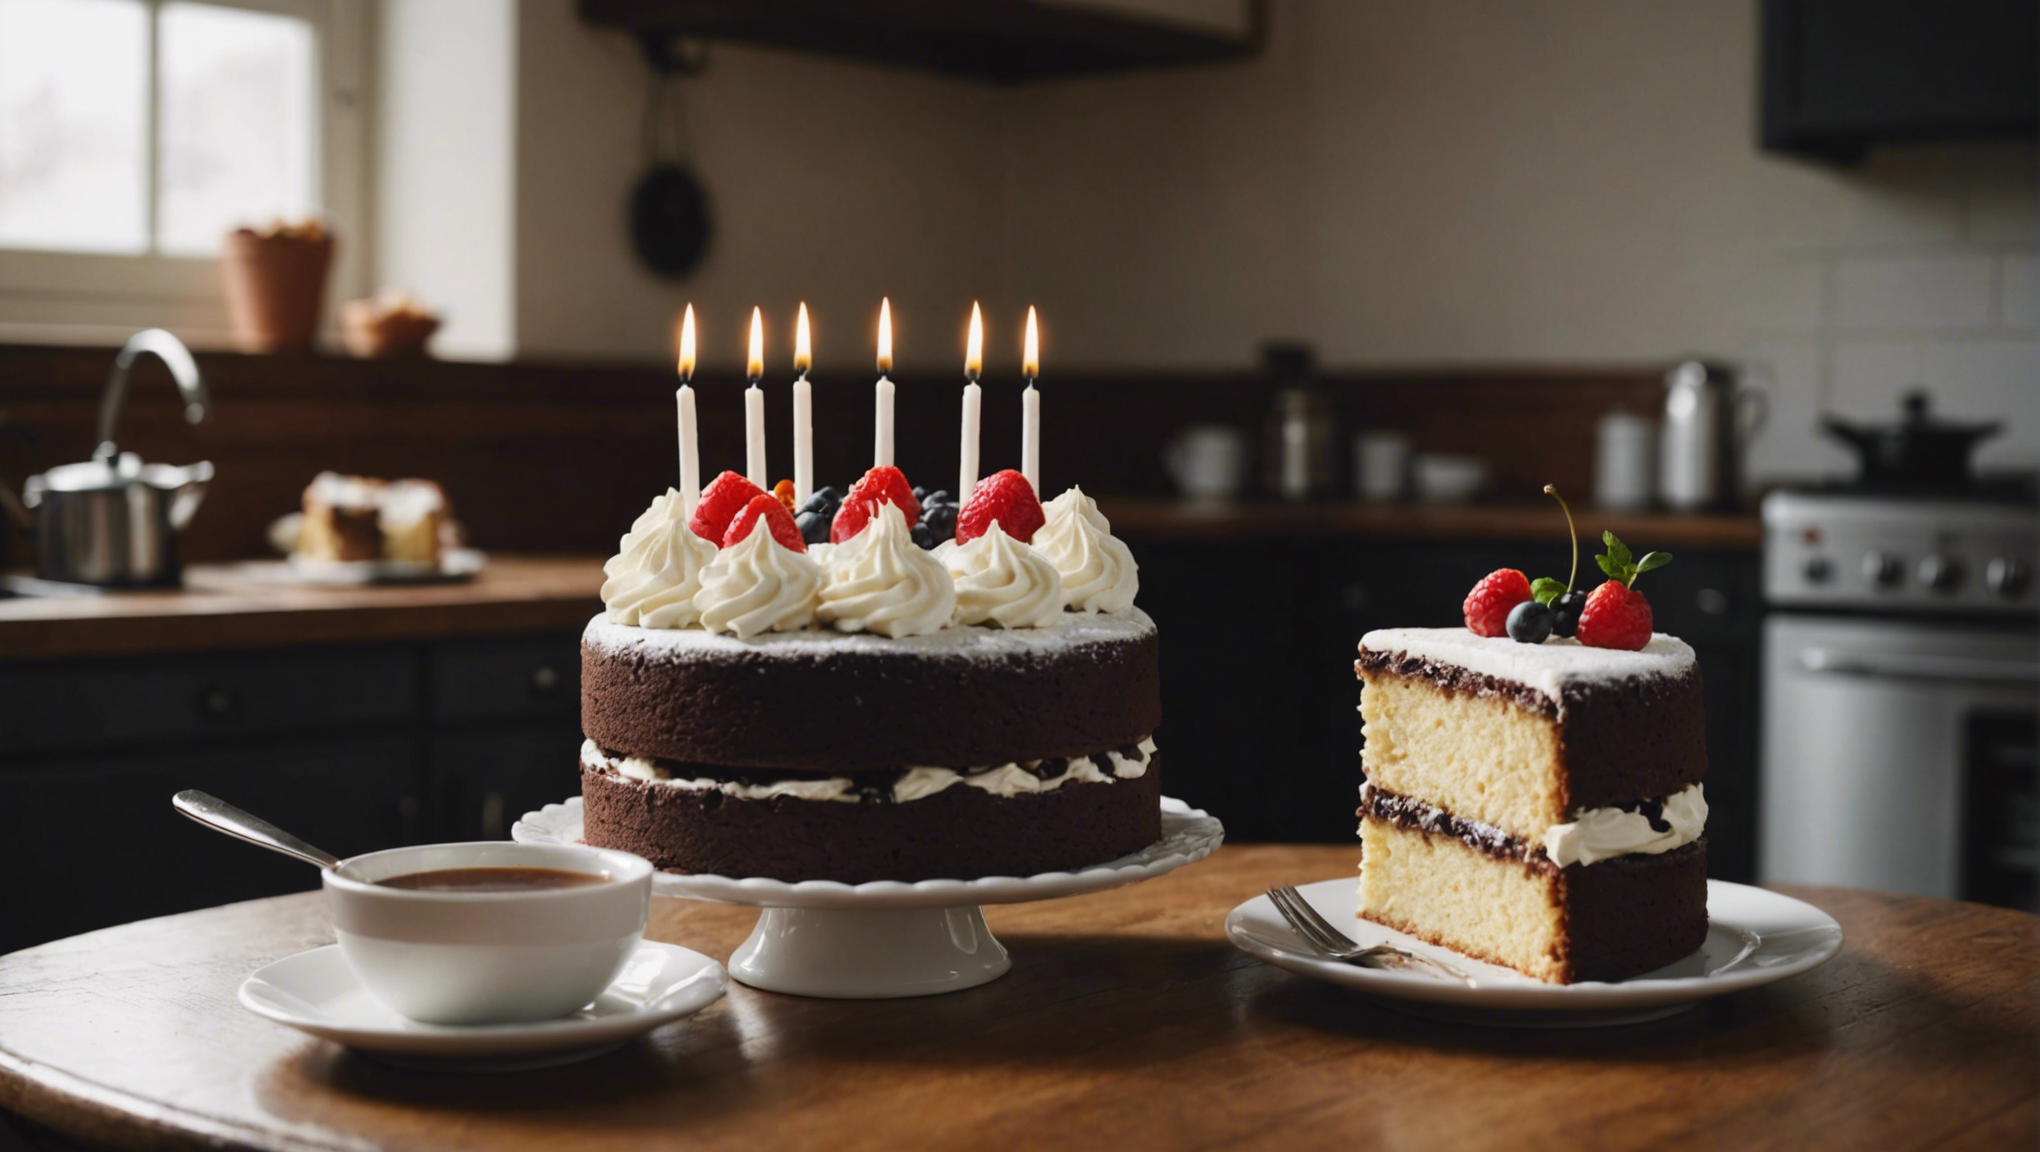 découvrez les raisons pour lesquelles votre gâteau ne gonfle pas et apprenez comment y remédier avec nos conseils pratiques.